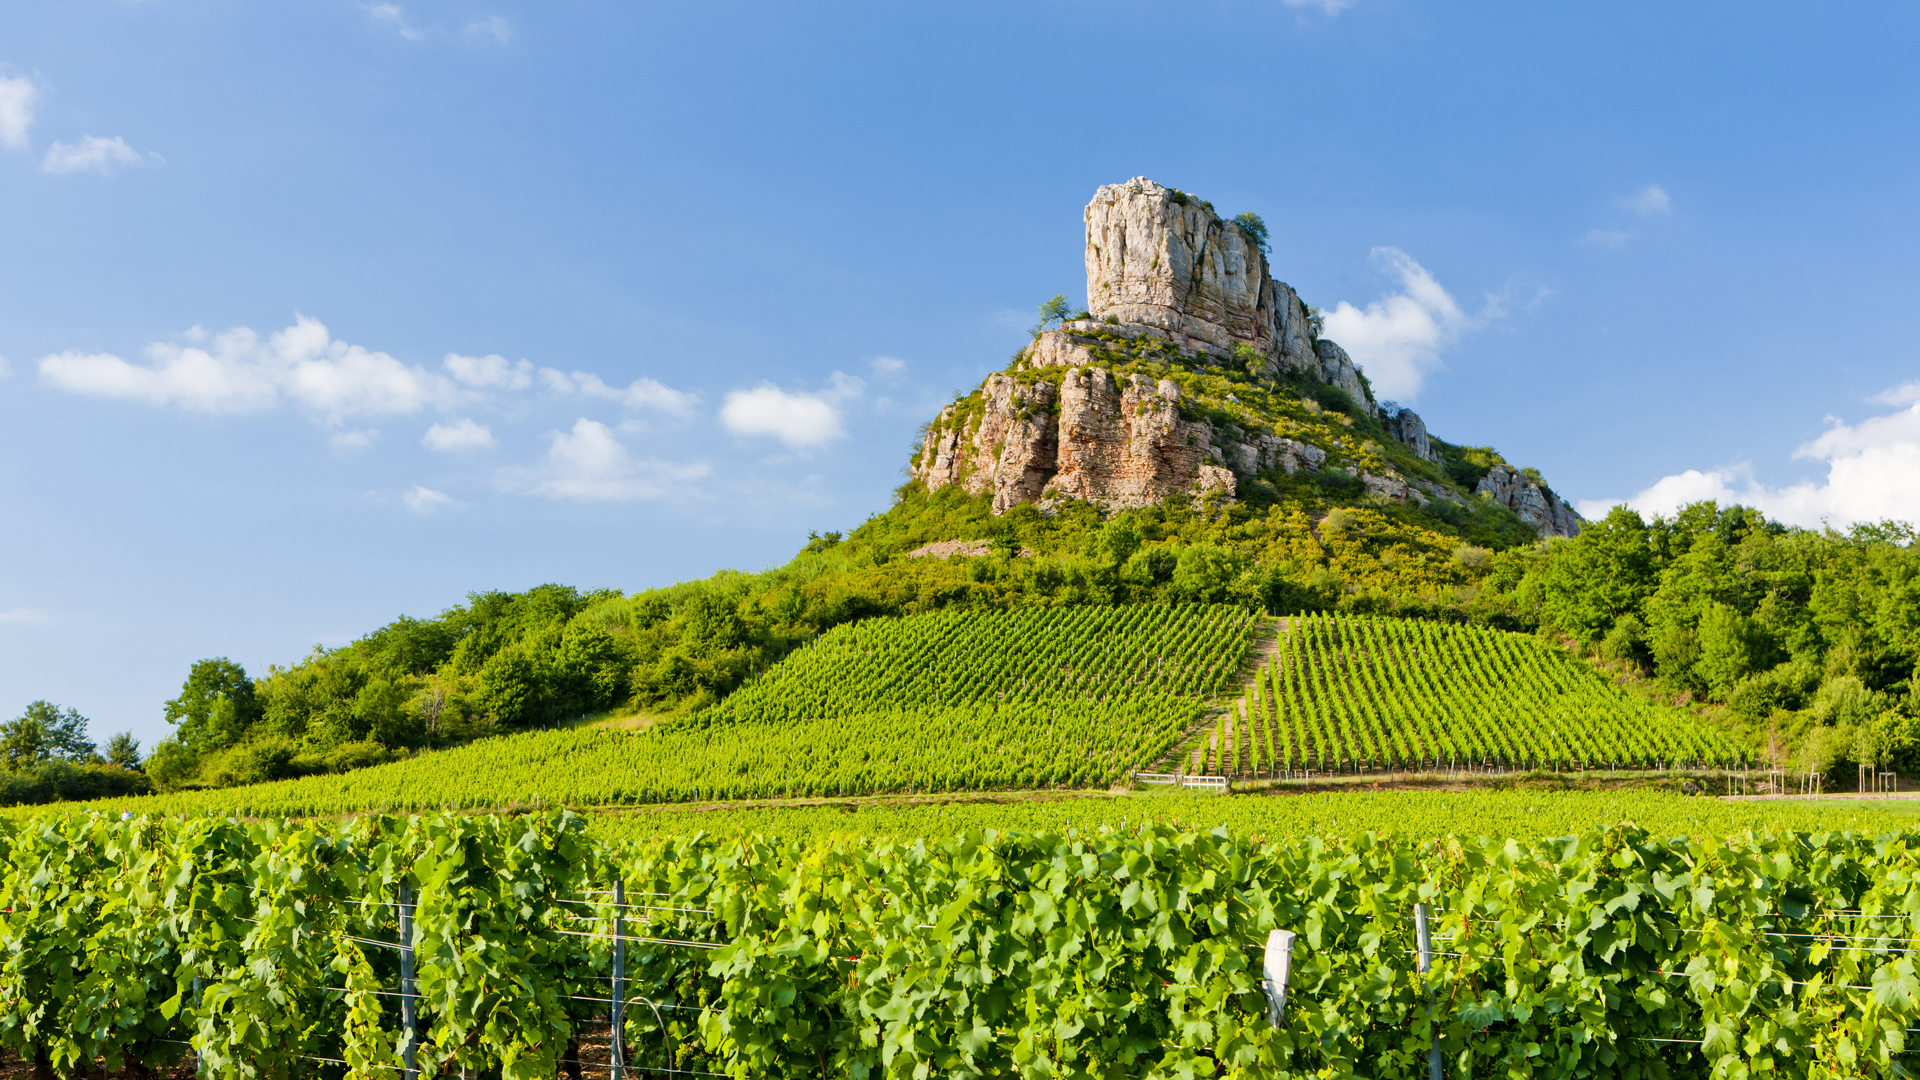 Les terres viticoles de Bourgogne sont riches d'un intéressant passé géologique. ©&nbsp;Prochasson Frédéric, Shutterstock